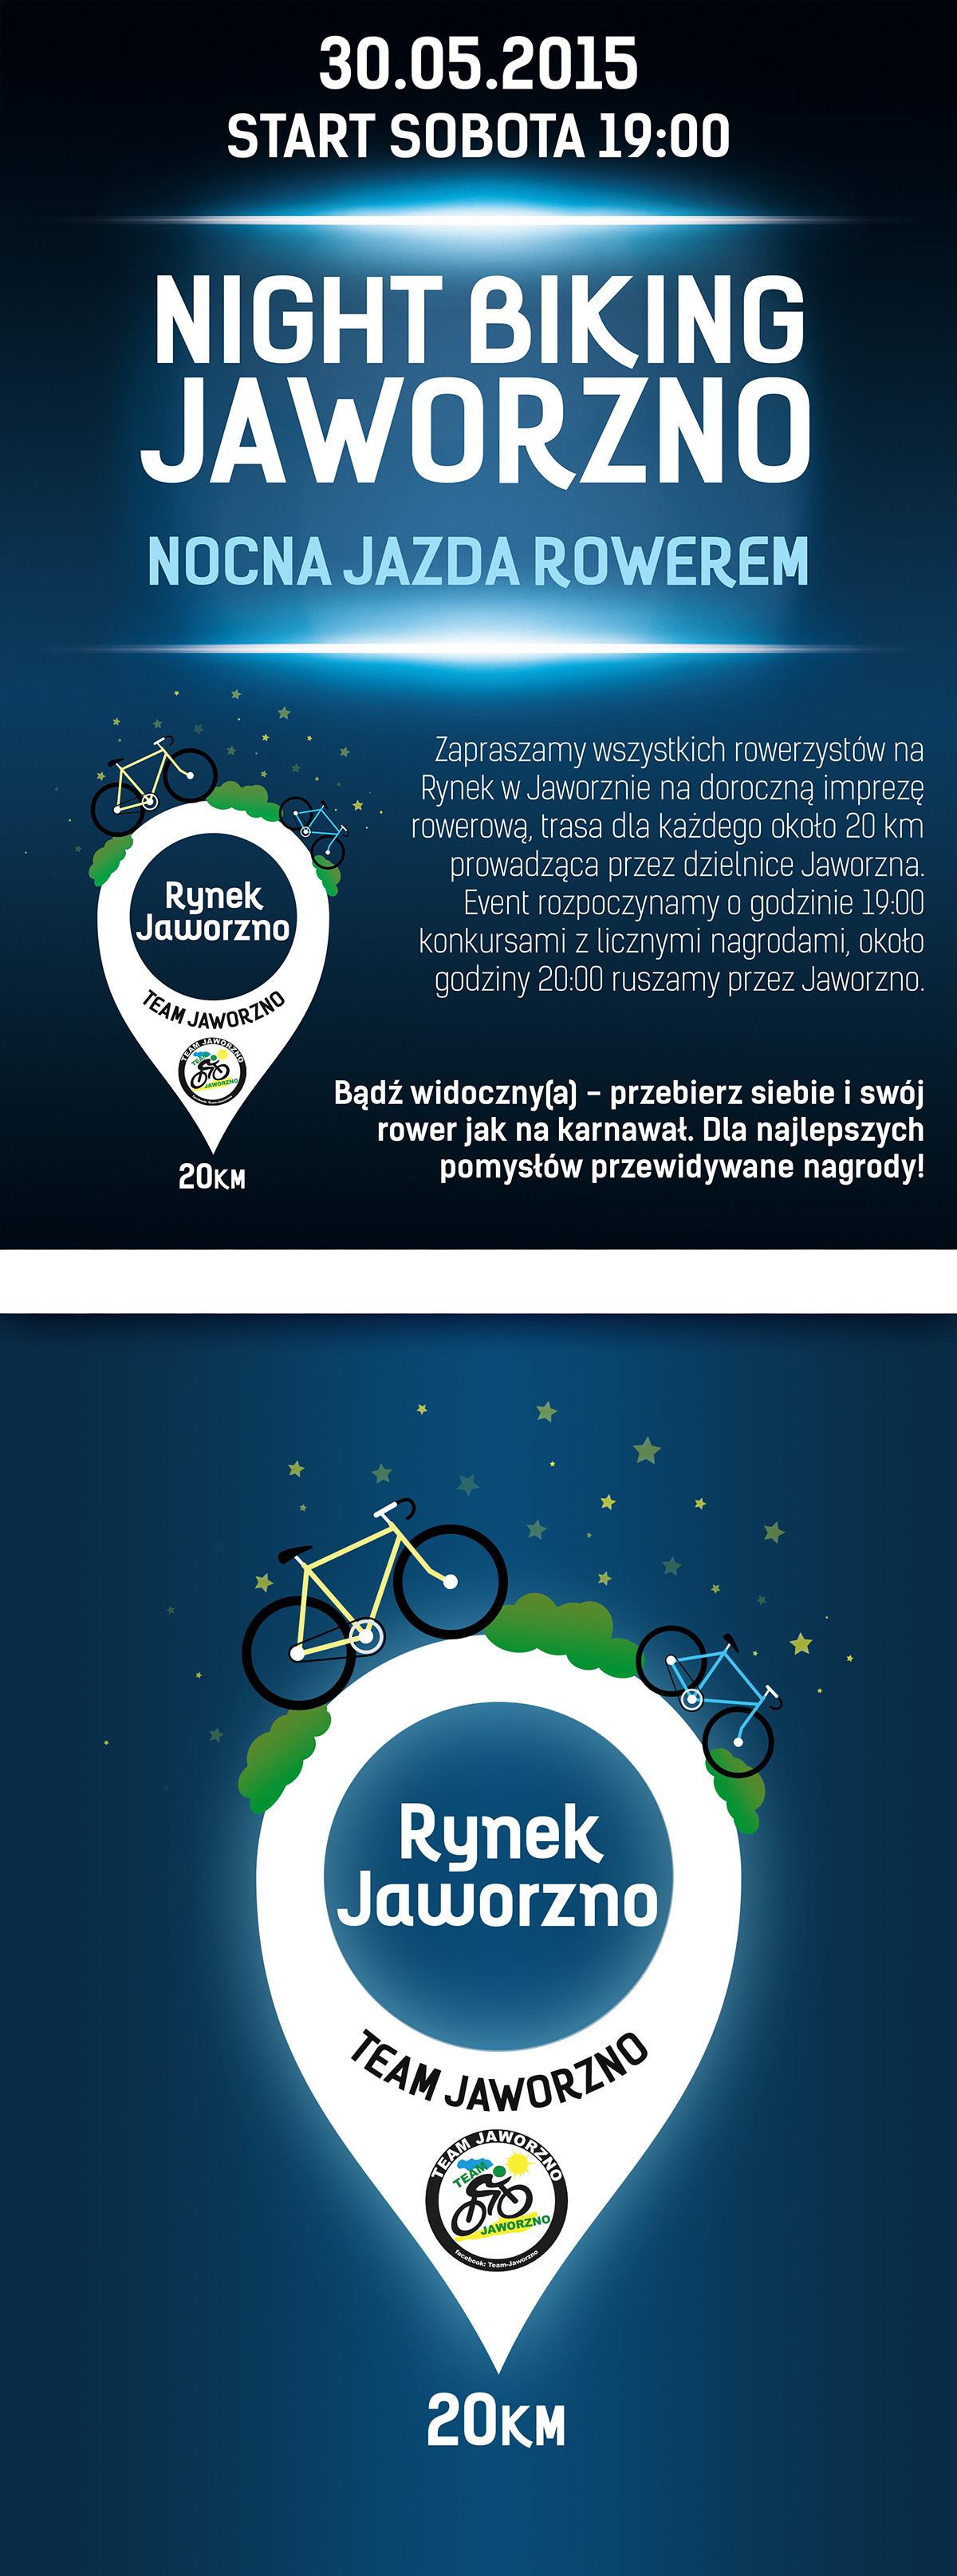 night biking Bike jaworzno poster plakat rowerem Rower Event wydarzenie